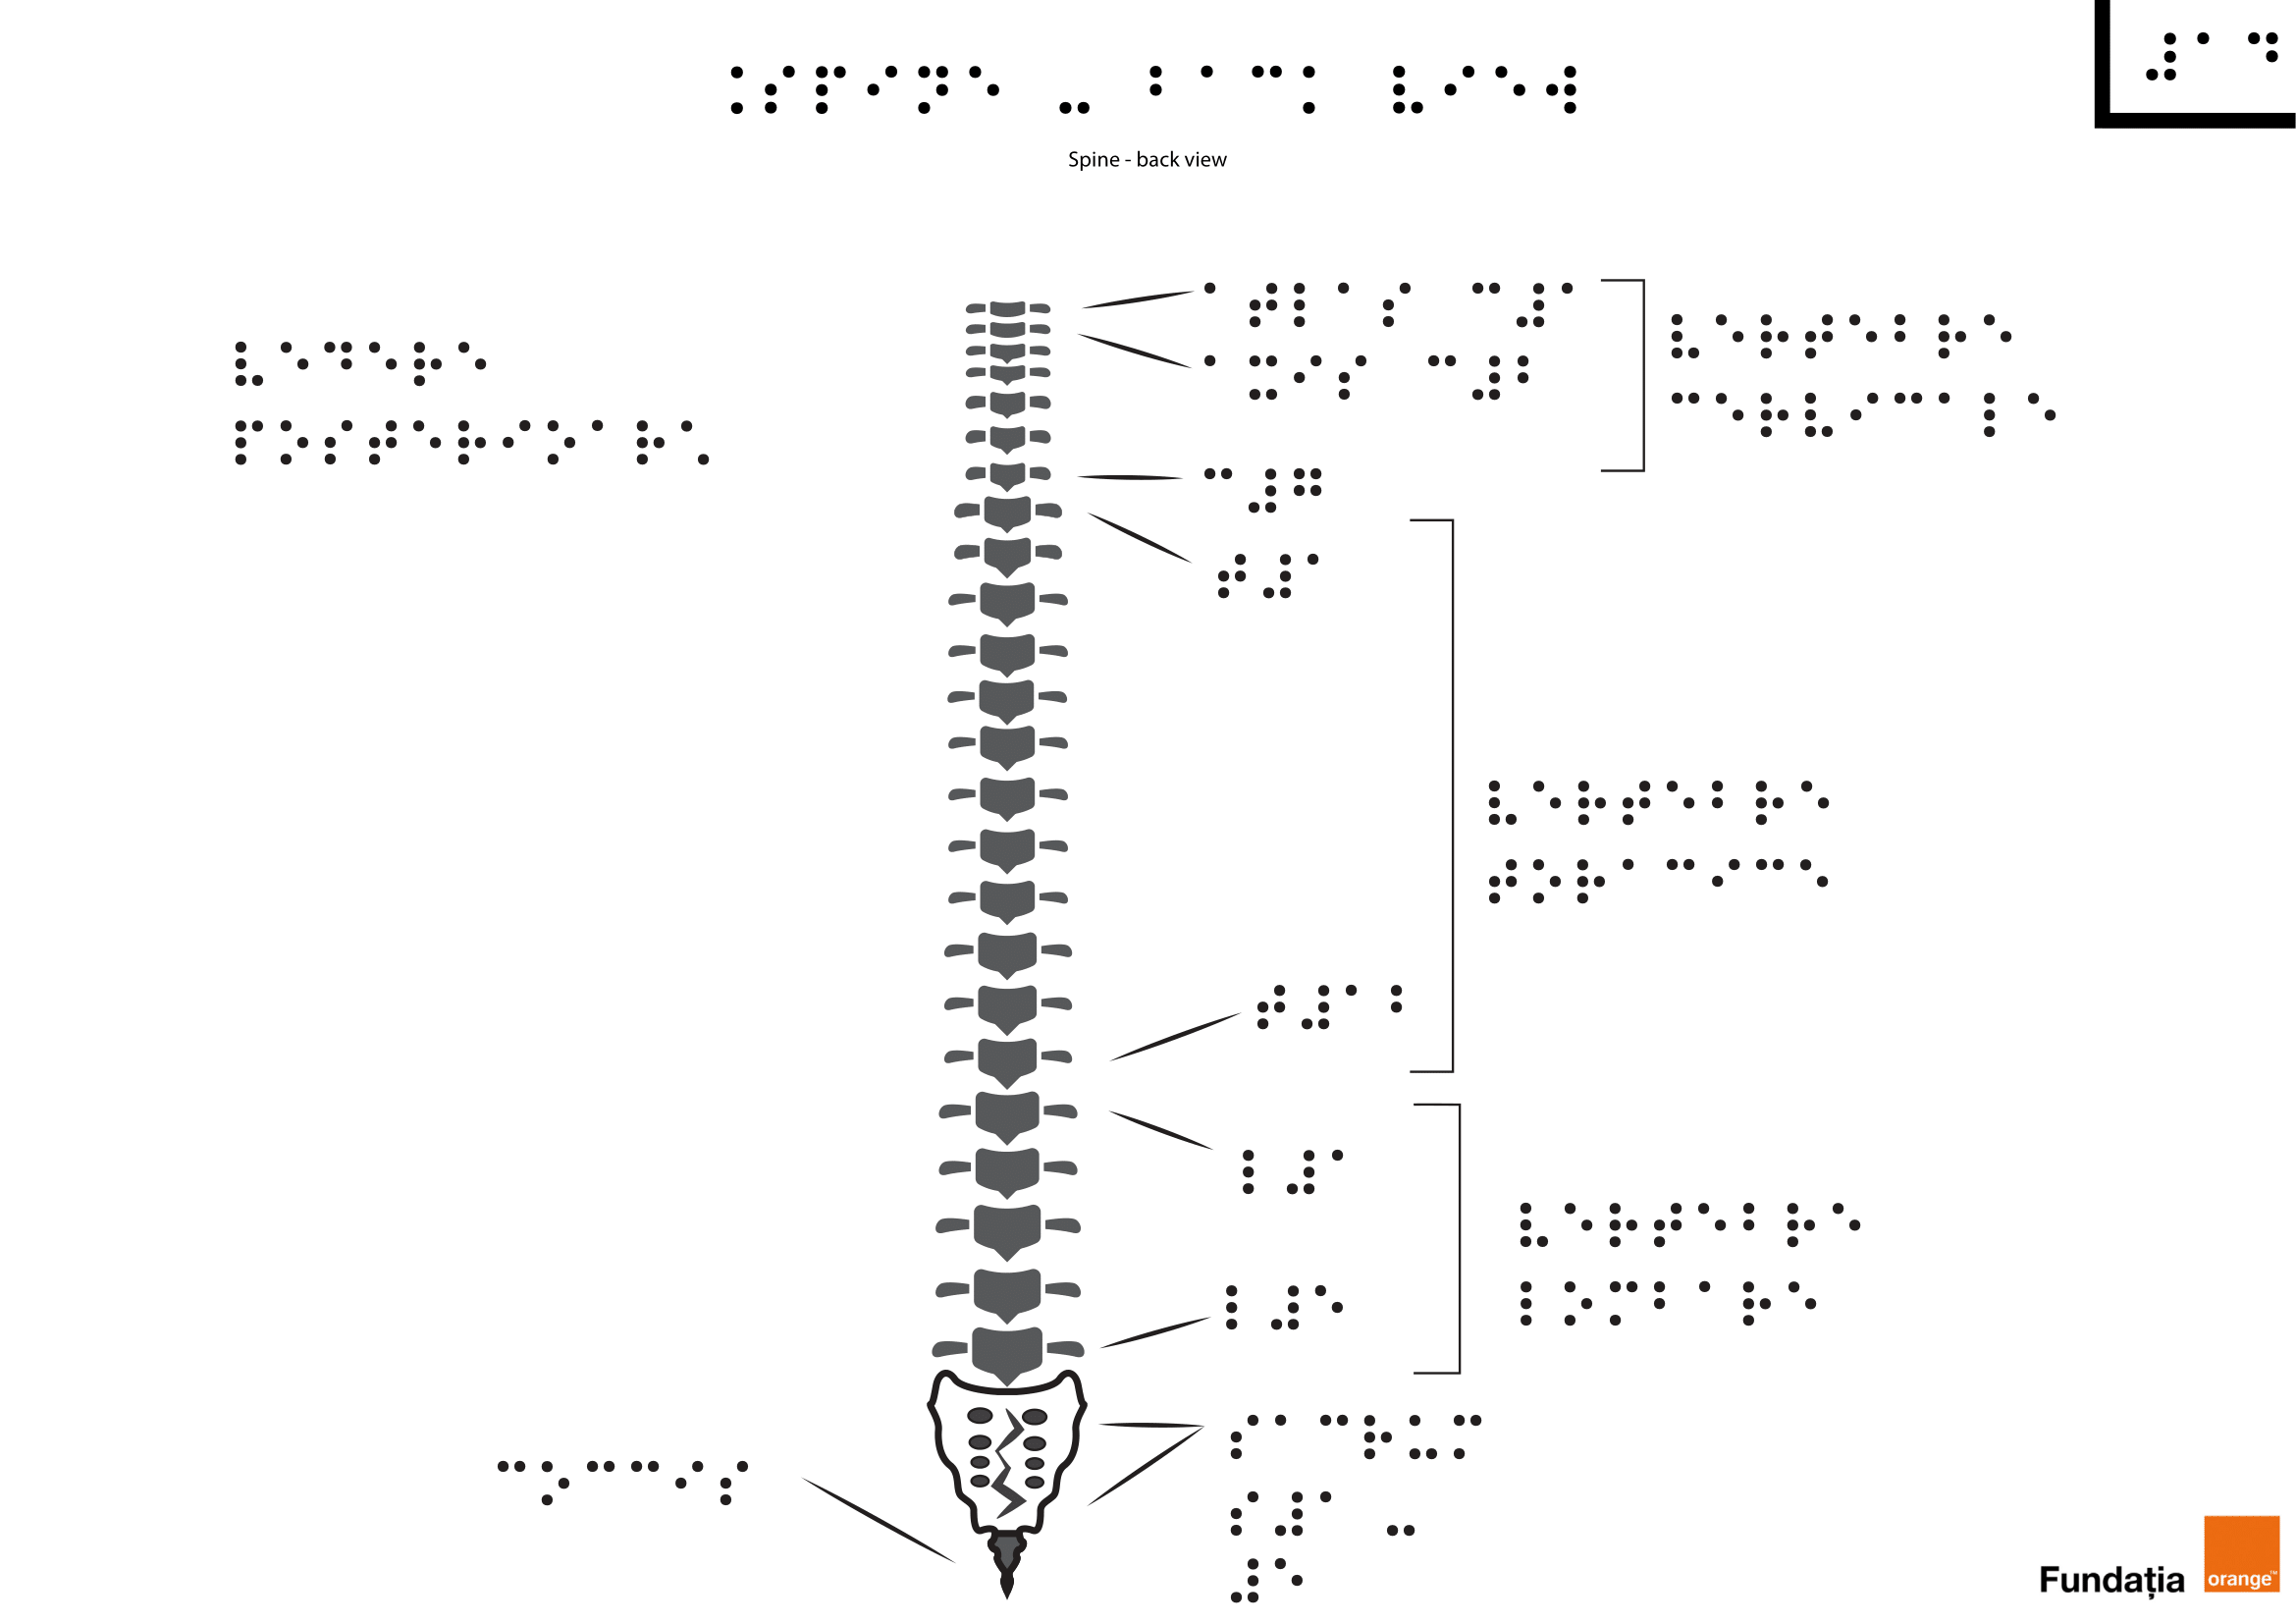 Coloana vertebrală – vedere din spate